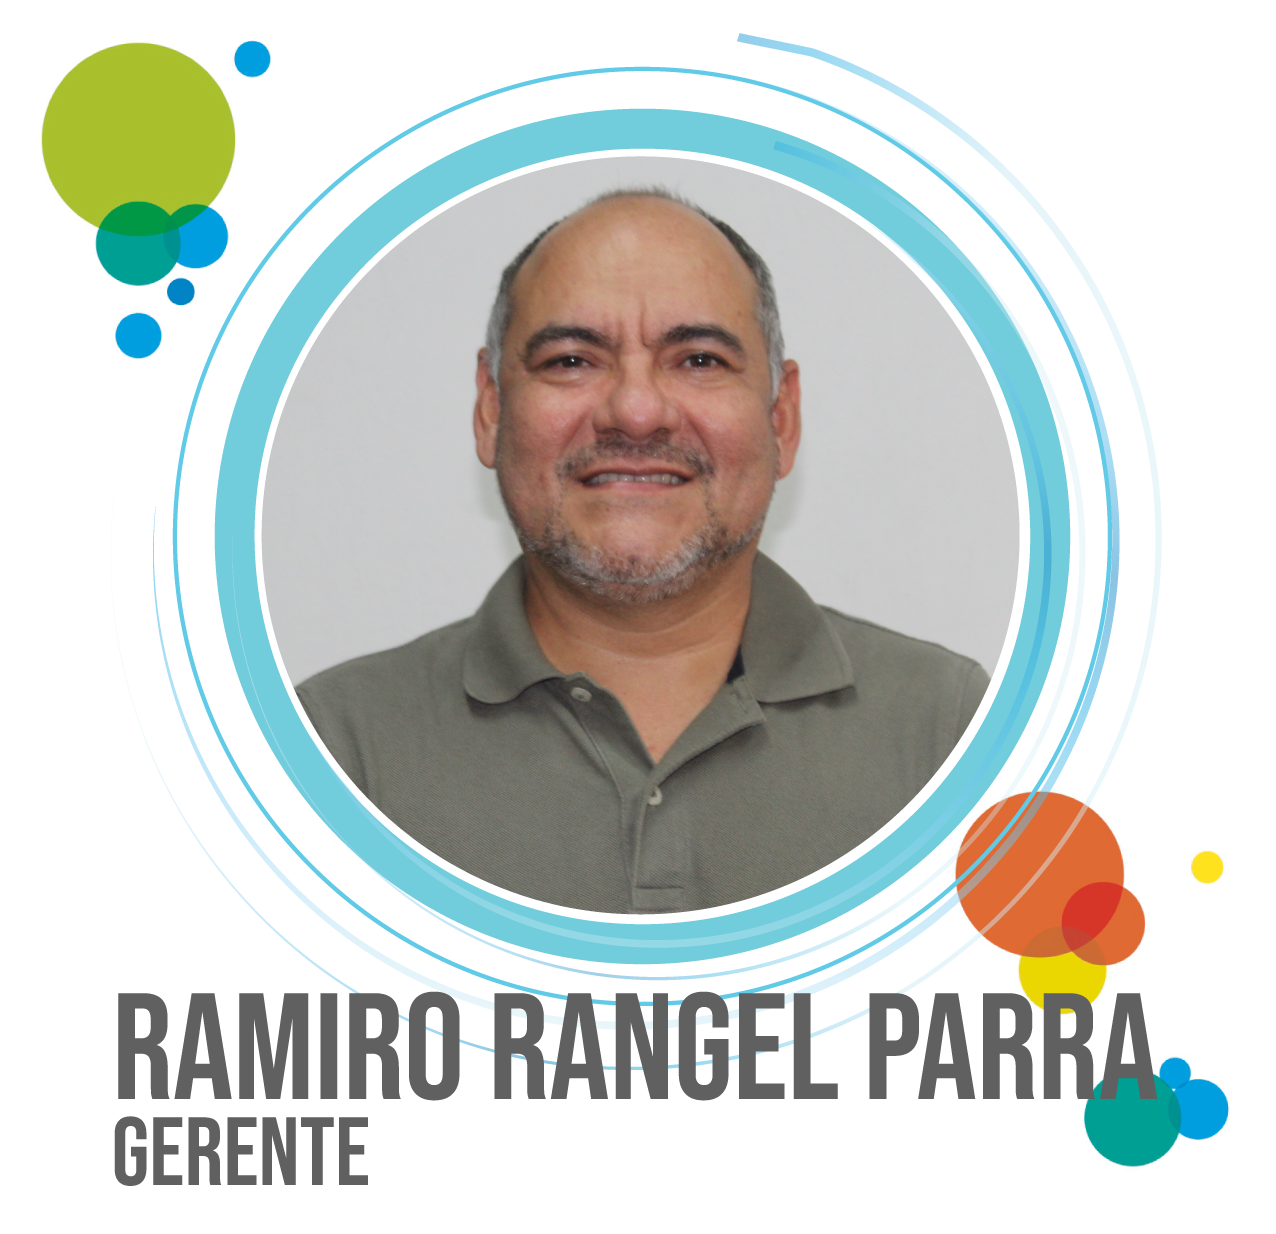 GERENTE_RAMIRO RANGEL PARRA